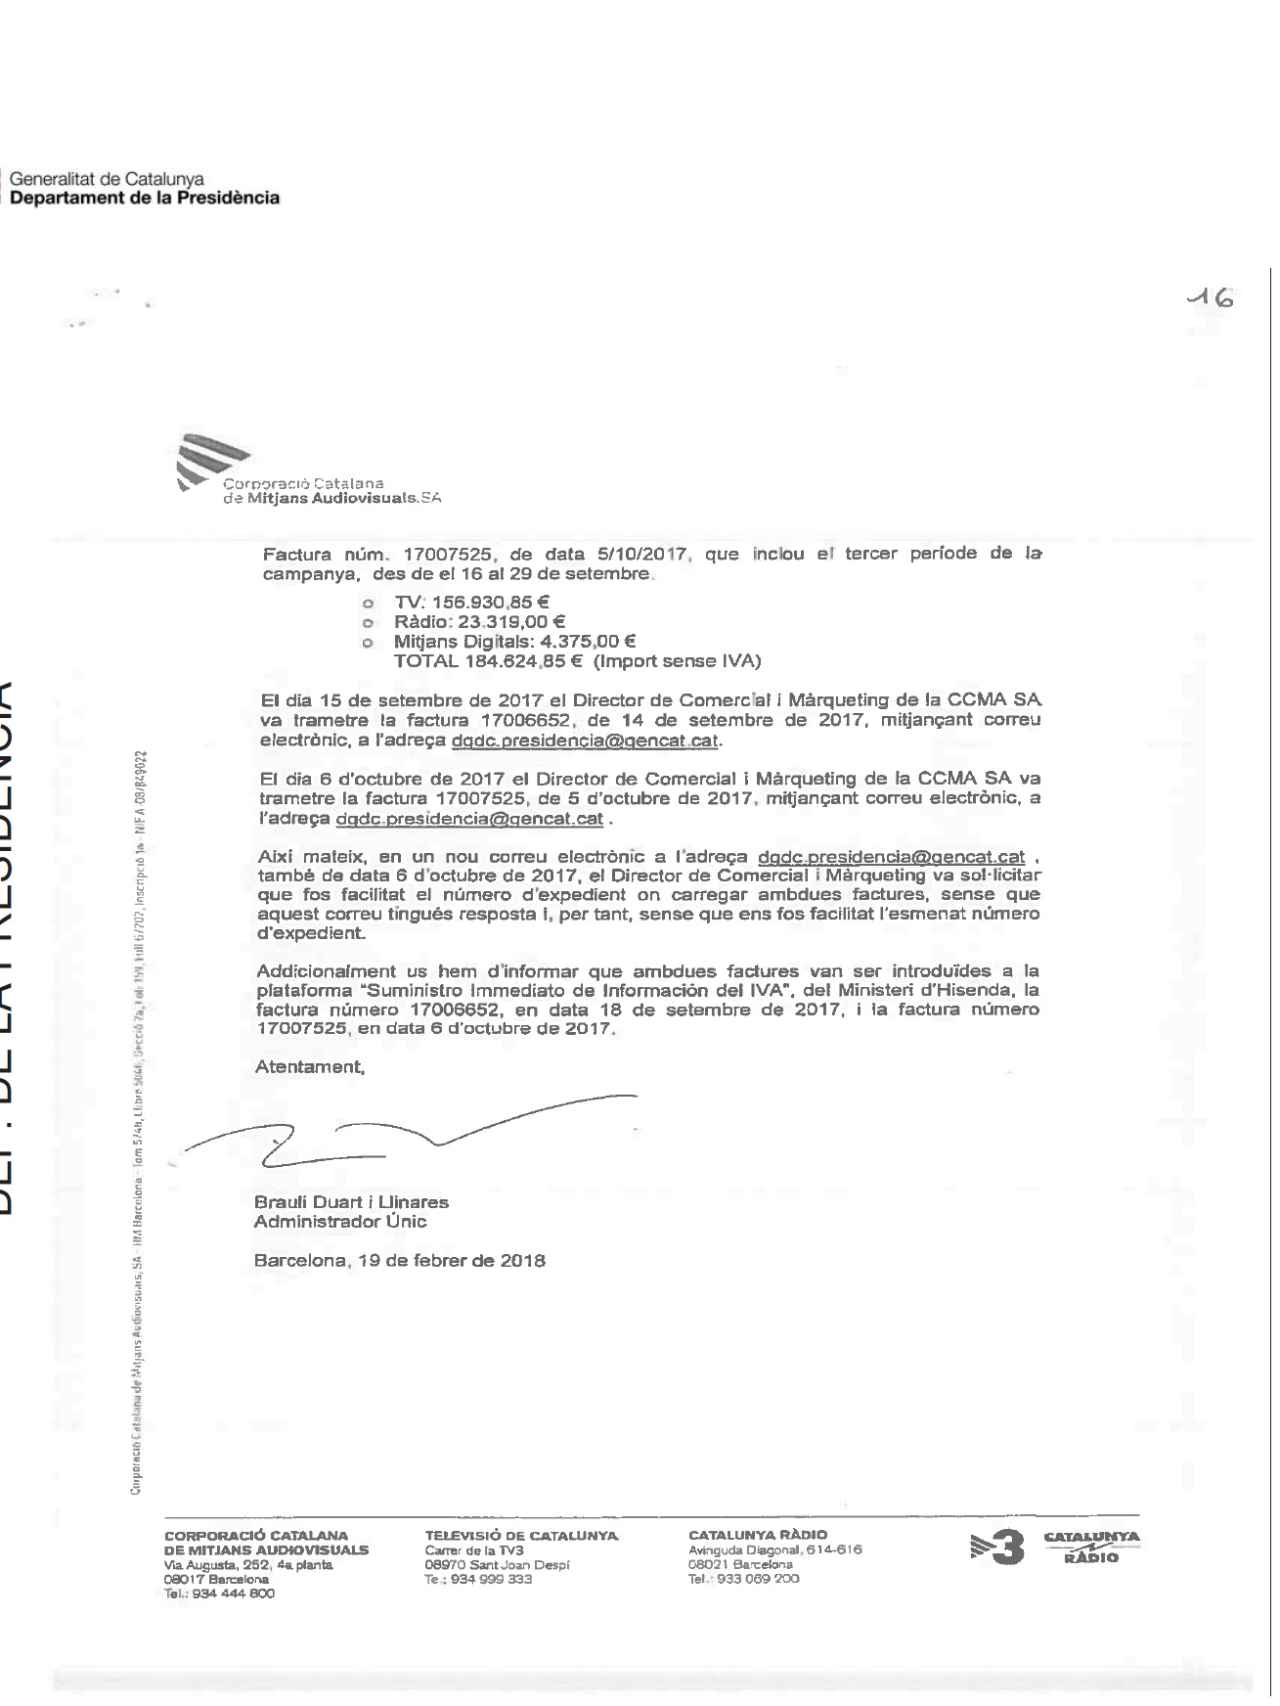 Segunda página de la carta de Brauli Duart a Presidencia de la Generalidad.